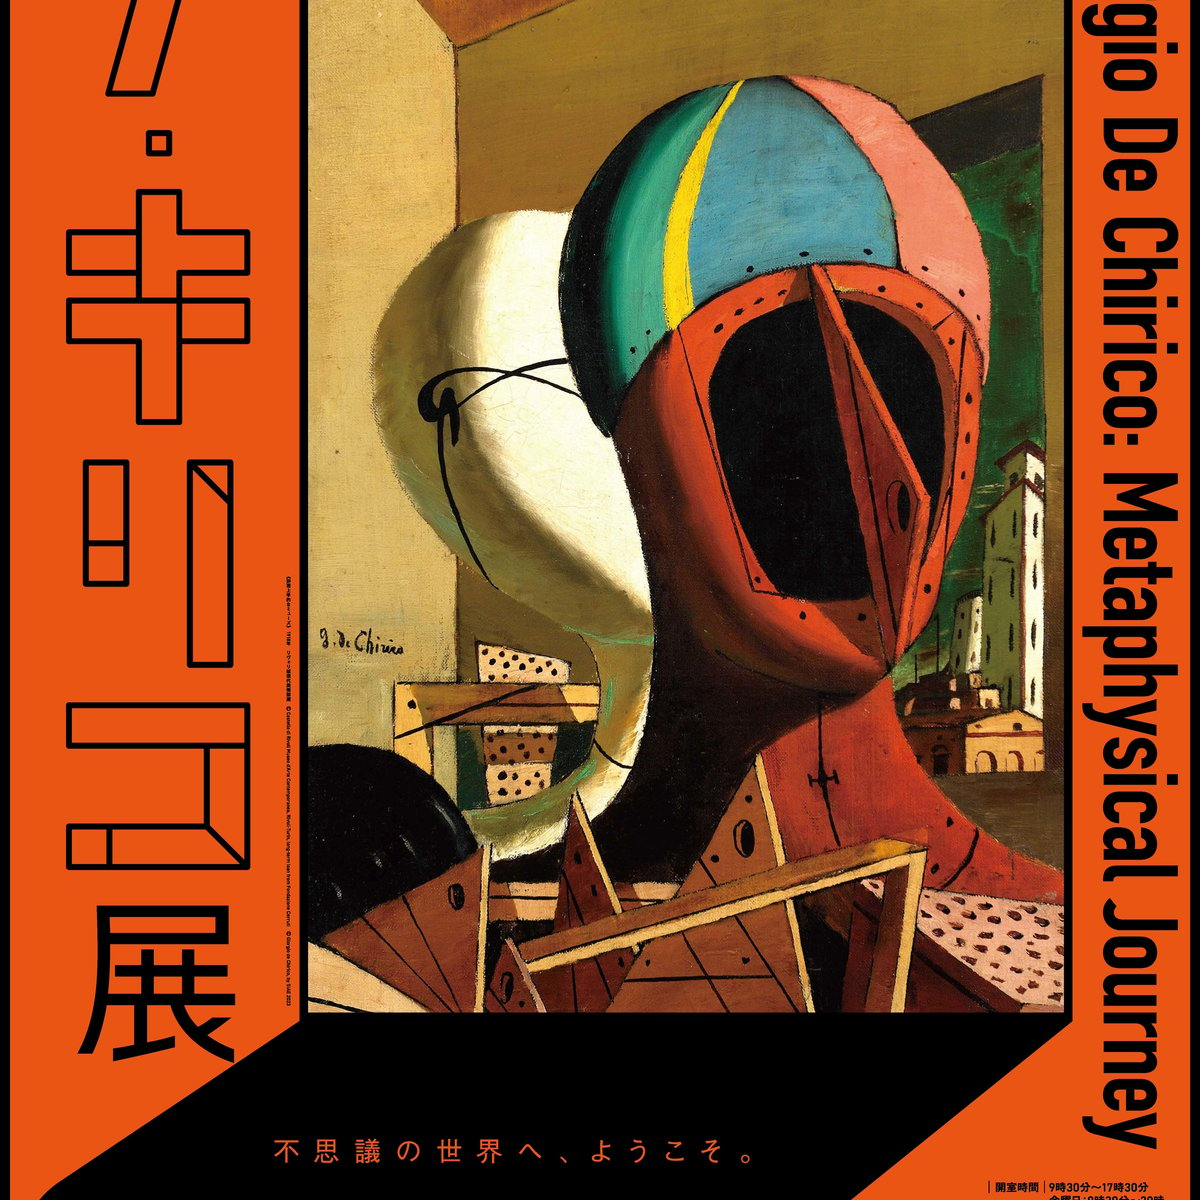 ジョルジョ・デ・キリコの大規模個展が10年ぶりに日本で開催 70年 